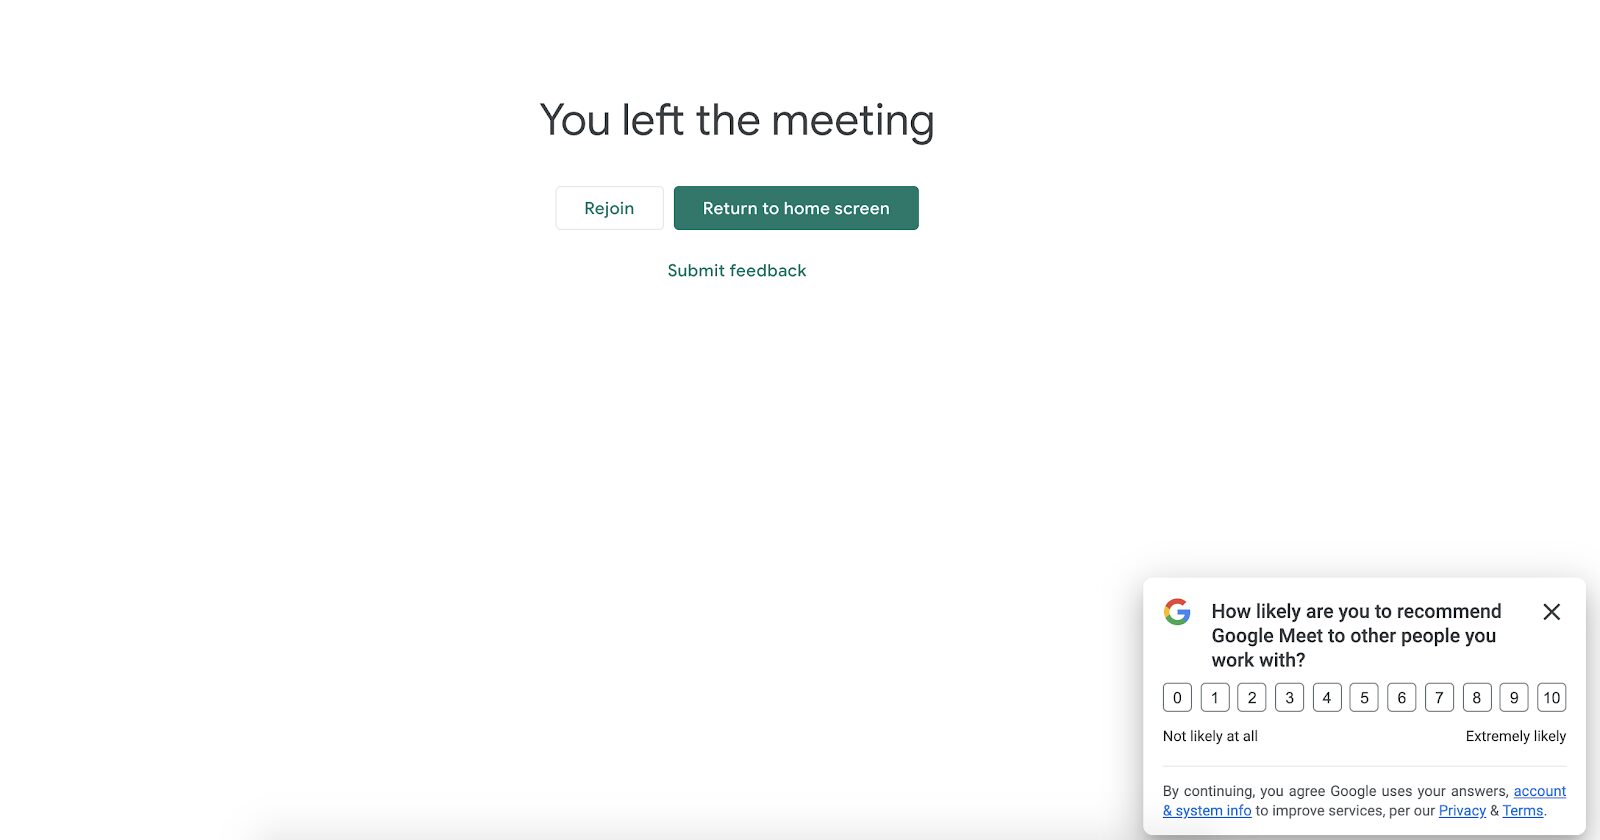 Die NPS-Umfrage von Google Meet wird angezeigt, nachdem der Besucher einen Anruf beendet hat, sodass er sofort Feedback zu seinem Erlebnis geben kann. Es ist eine großartige Taktik, Benutzer zum Teilen von Feedback zu ermutigen, solange es noch frisch ist.